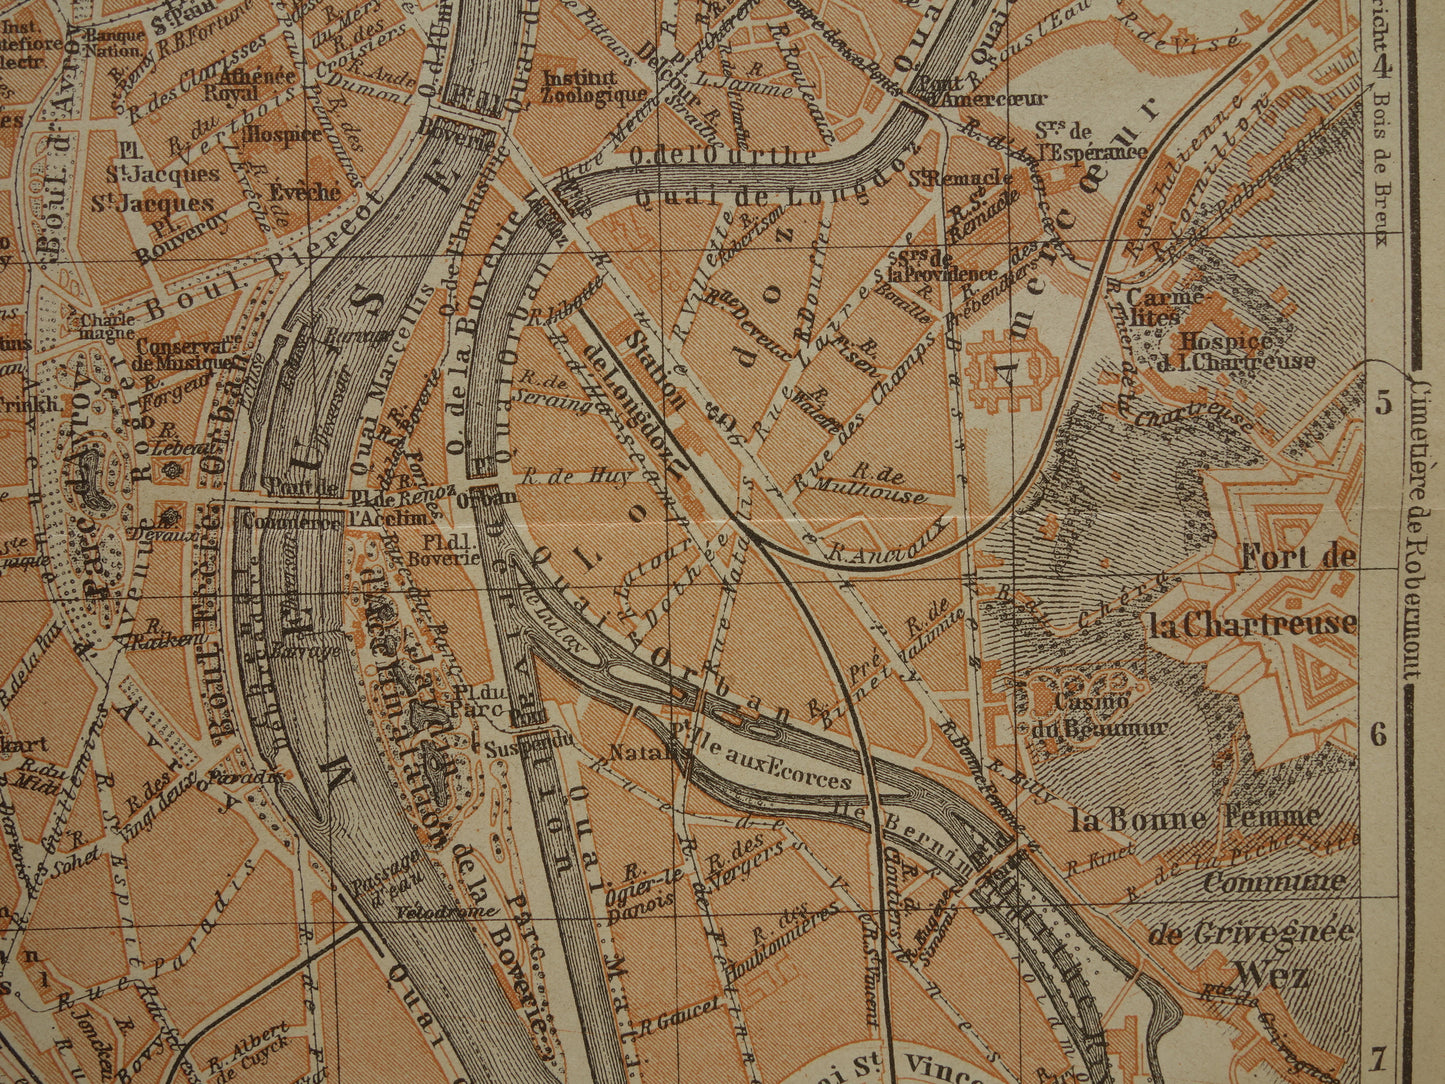 Oude kaart van Luik België uit 1904 originele antieke plattegrond Luik carte de Liège vintage kaarten